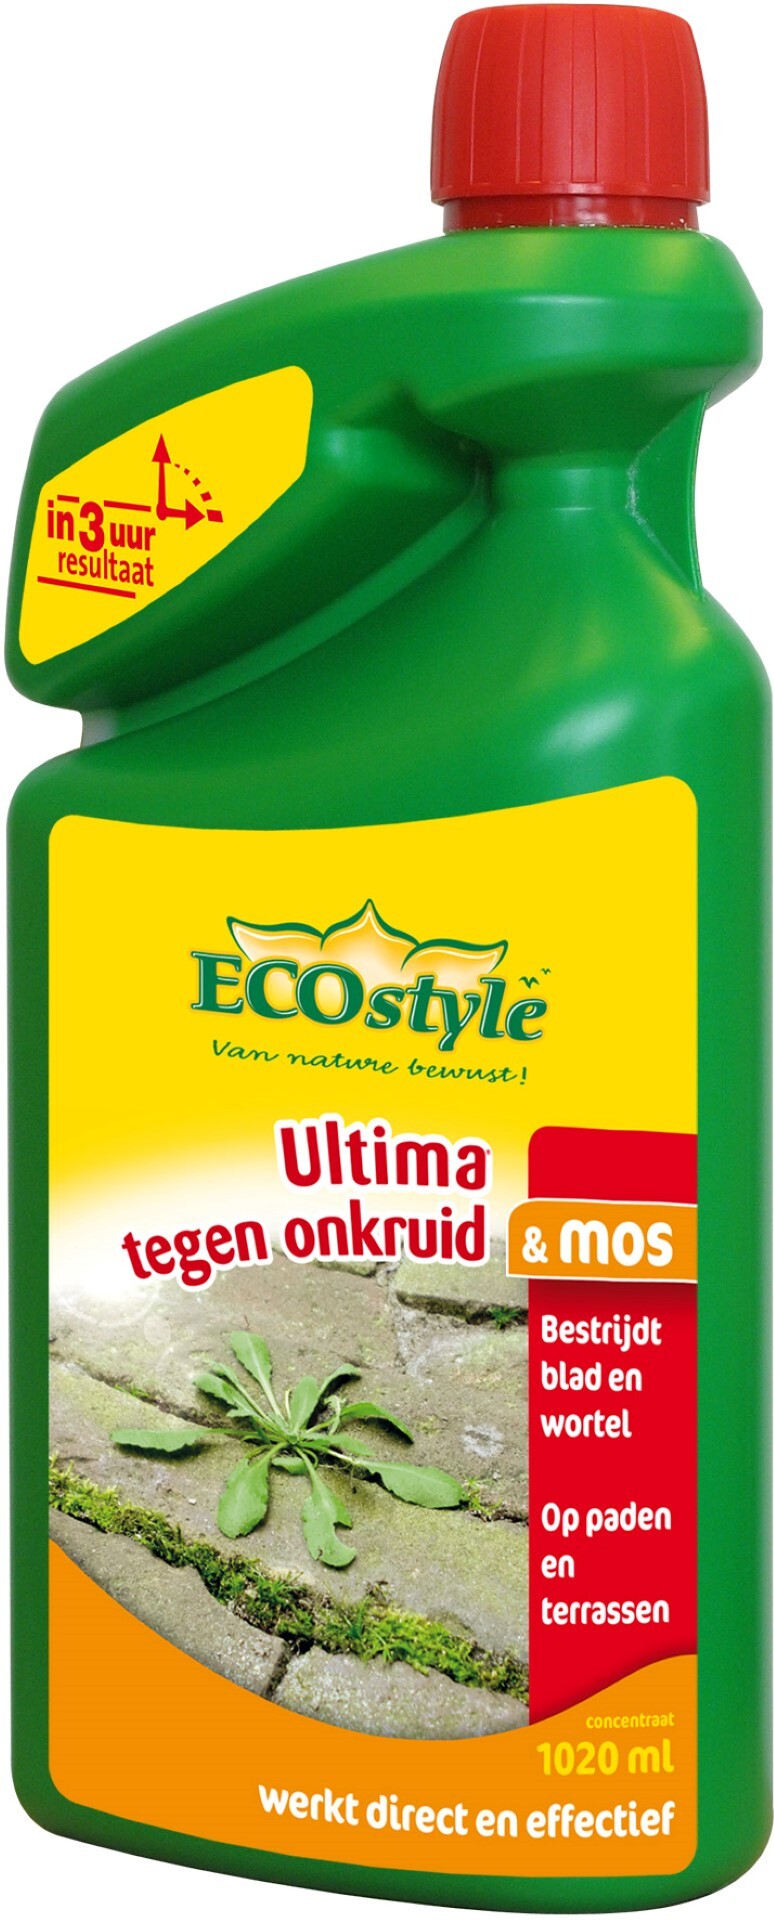 ECOSTYLE Ultima onkruid & mos - bestrijdt wortel en blad - concentraat 1020 ml Tegen onkruid & mos op paden en terassen